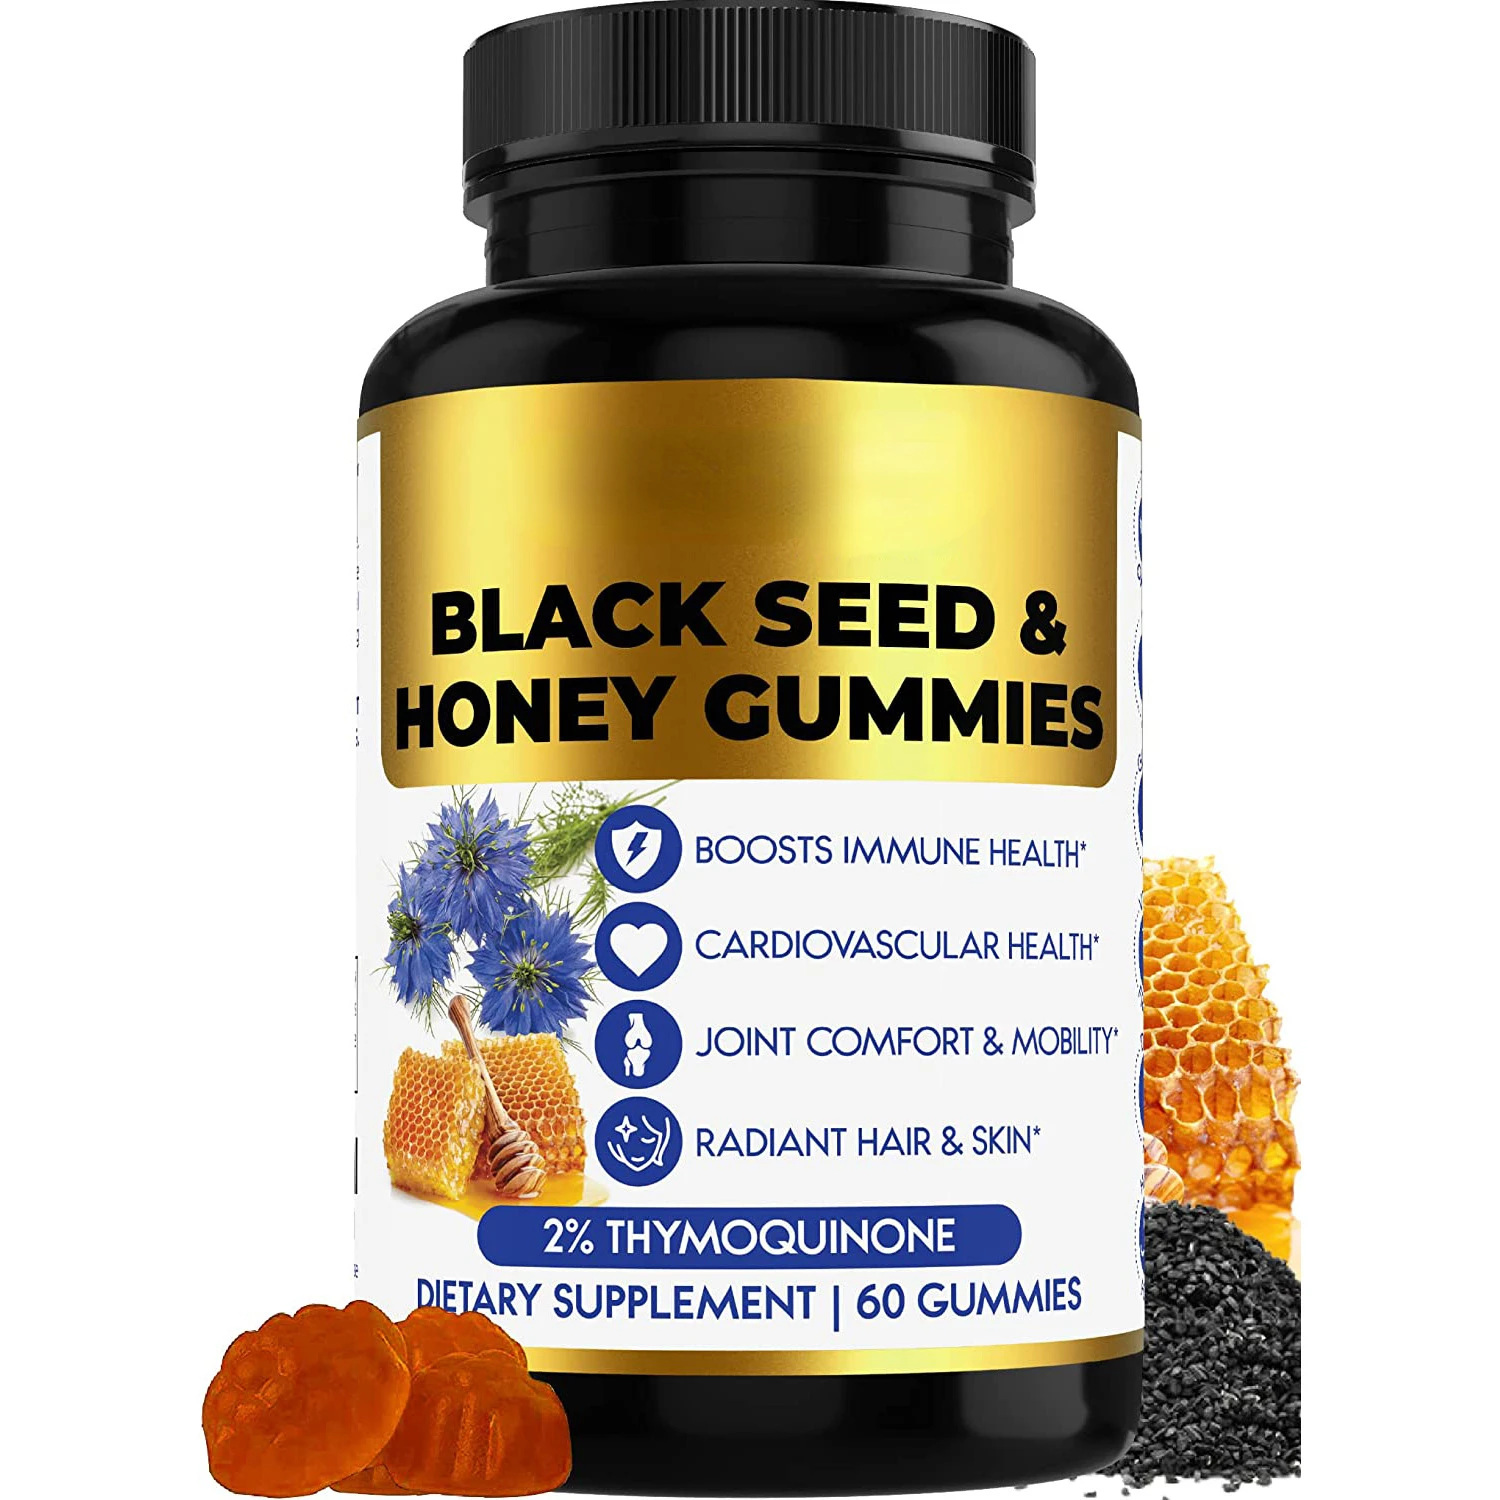 

60 жевательных резинок с черными семенами, медовые жевательные резинки повышают иммунитет и здоровье сердечно-сосудистых заболеваний, комфортные и красивые блестящие волосы и кожа